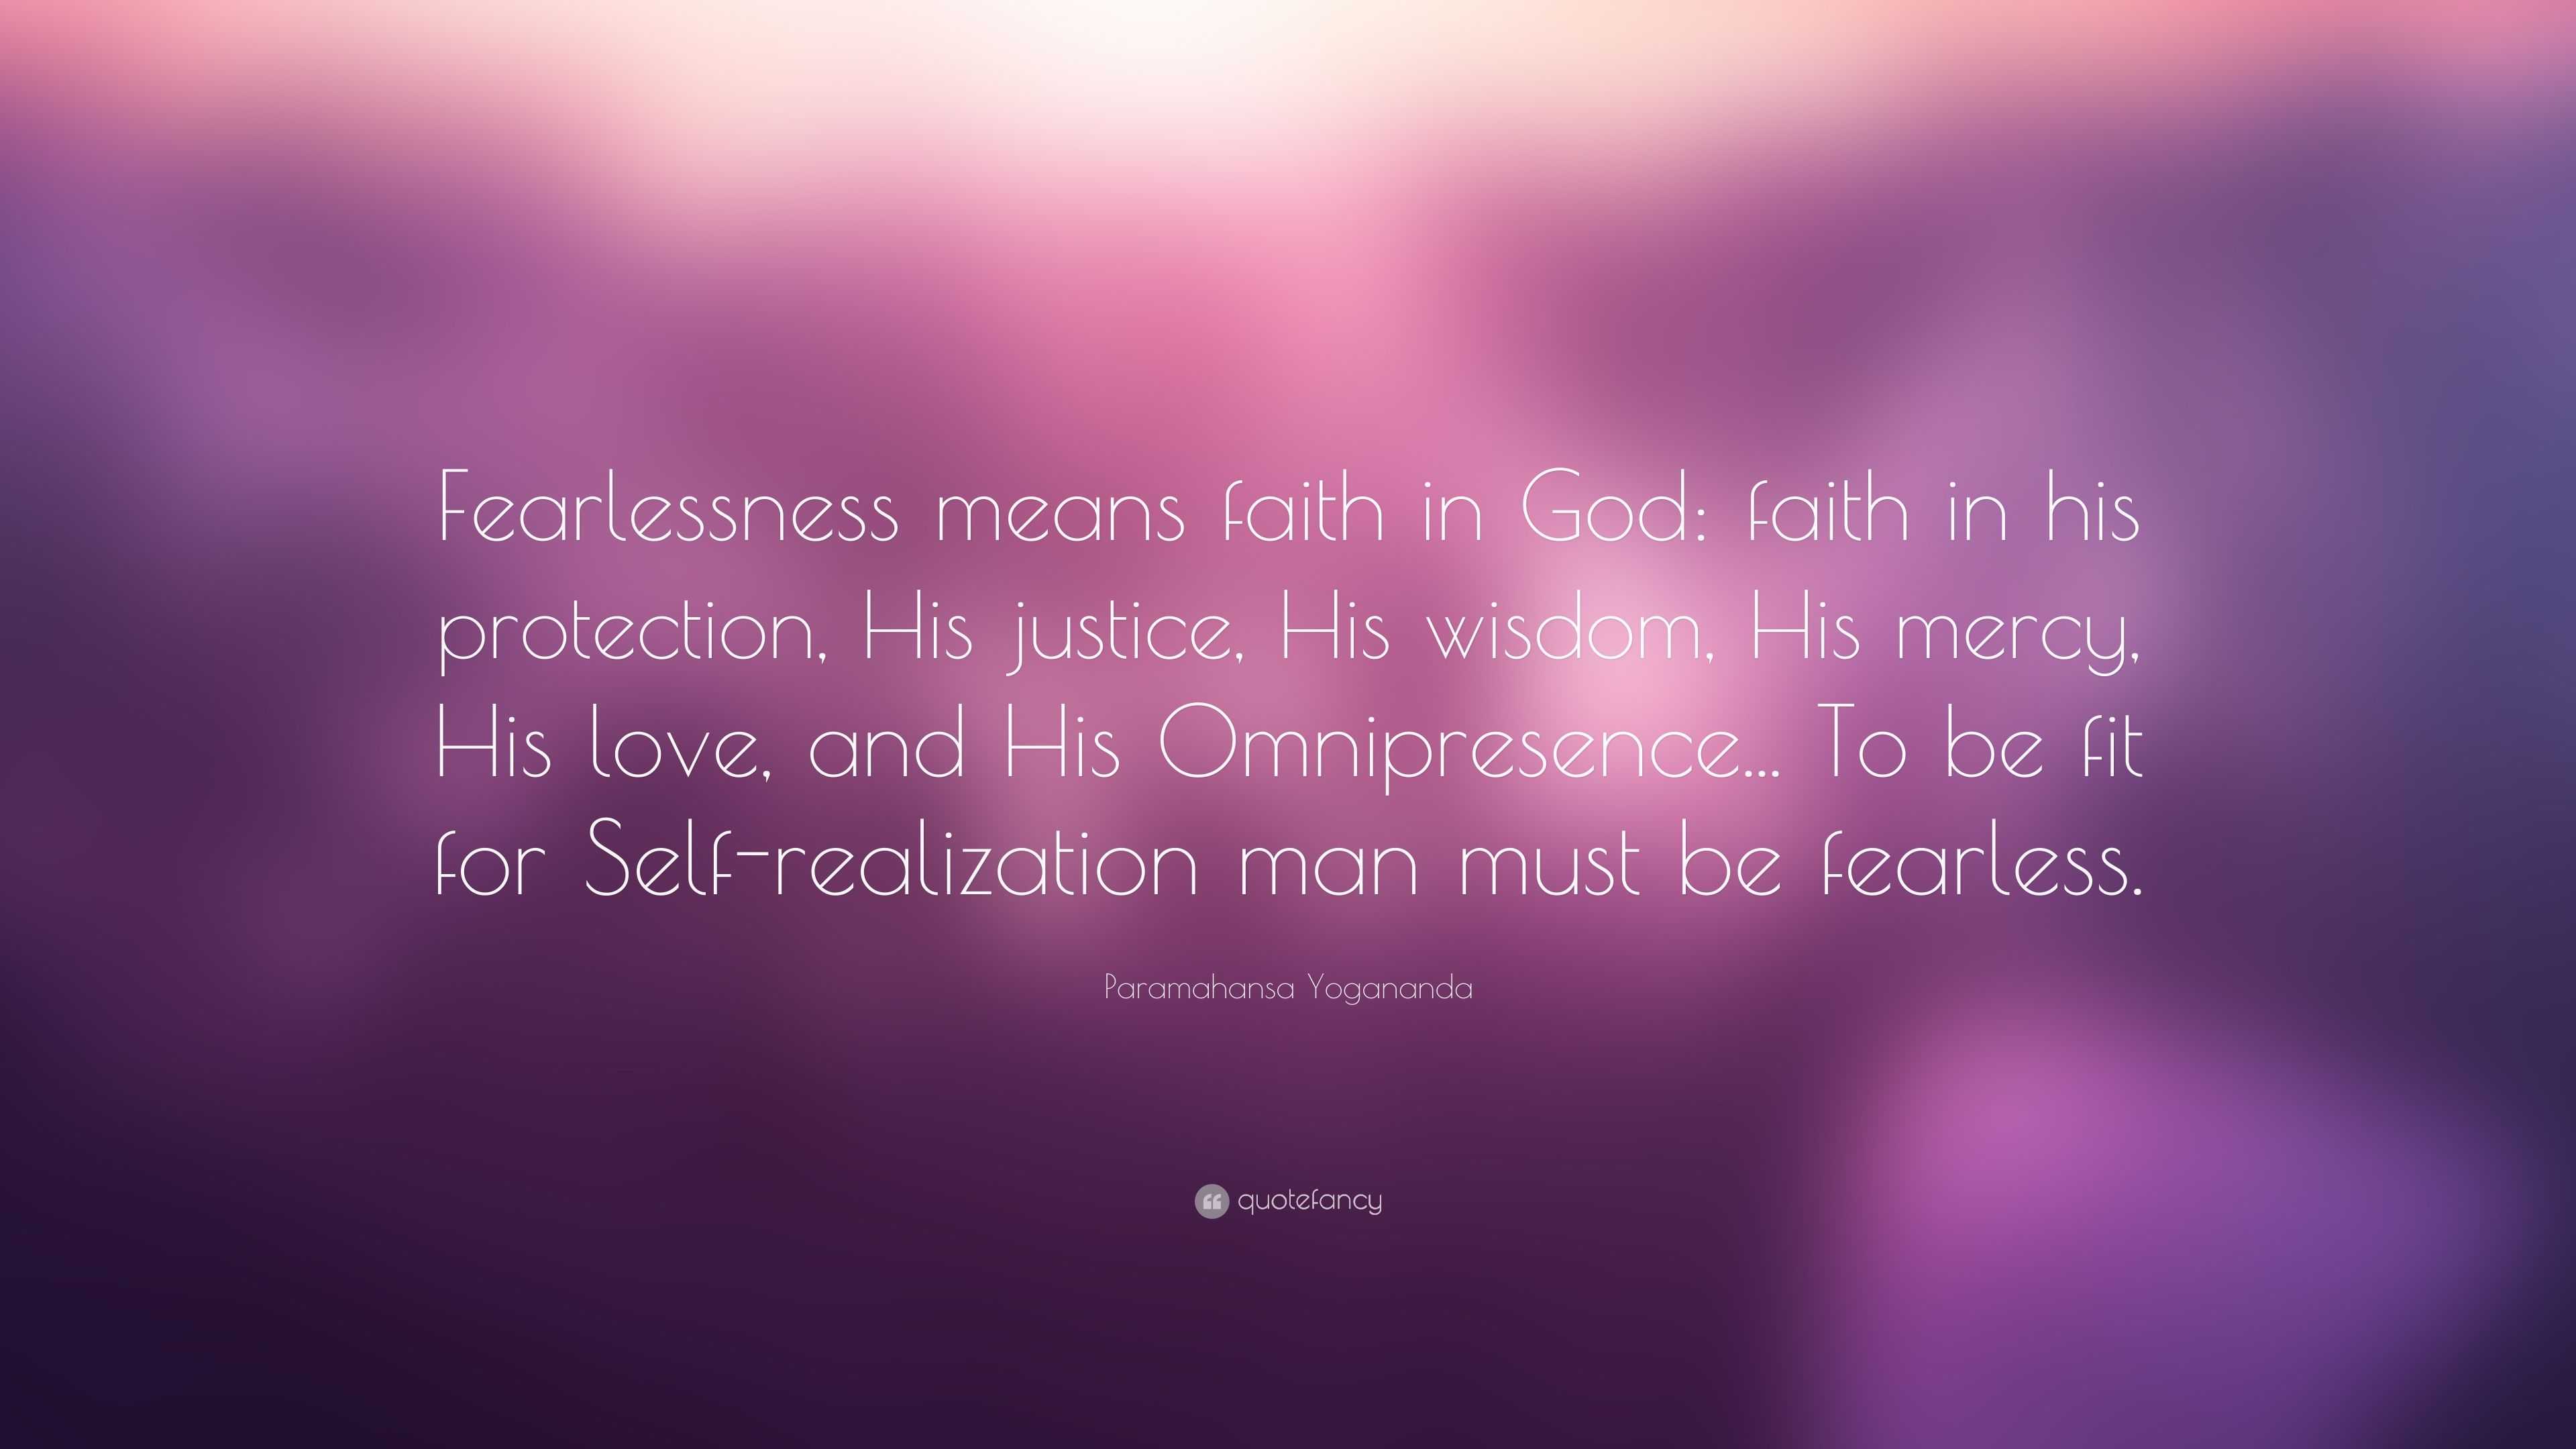 Paramahansa Yogananda Quote: “Fearlessness means faith in God: faith in ...